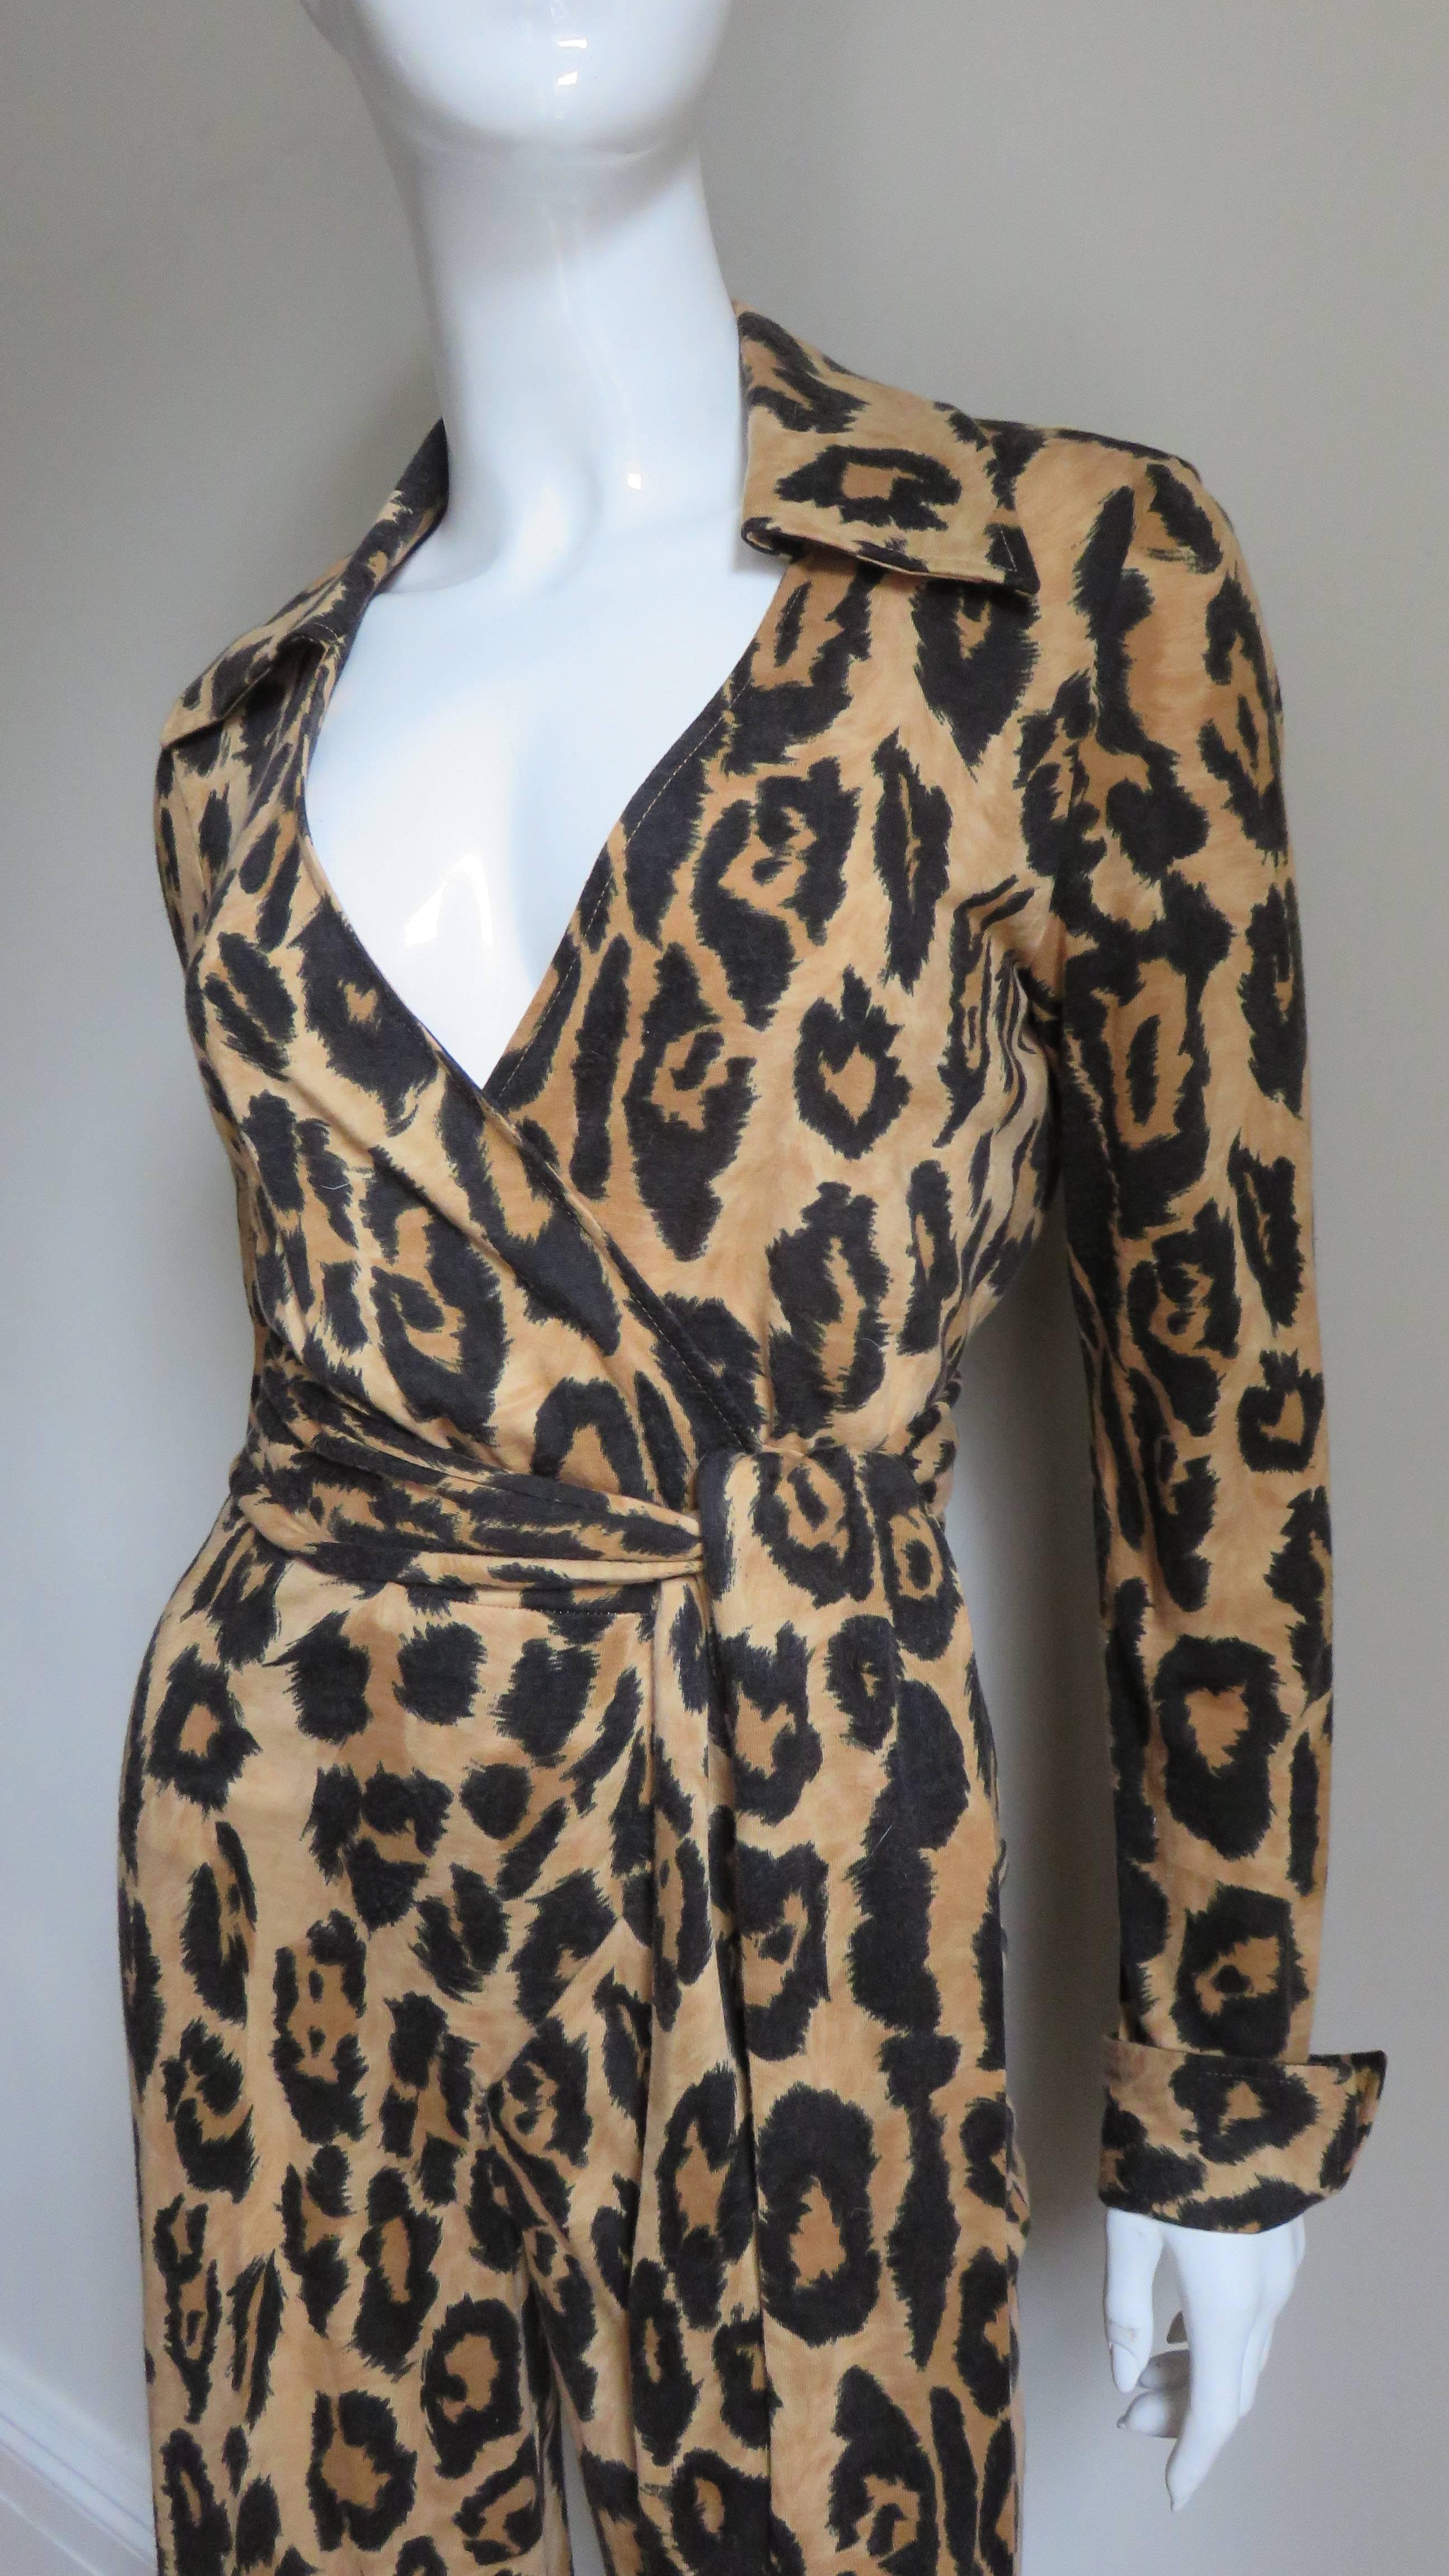 Fabuleuse combinaison iconique en jersey de soie imprimé léopard signée Diane Von Furstenberg.  Il présente un col de chemise, des manches longues avec des poignets repliés et se noue à la taille. Les jambes sont droites. La combinaison n'est pas